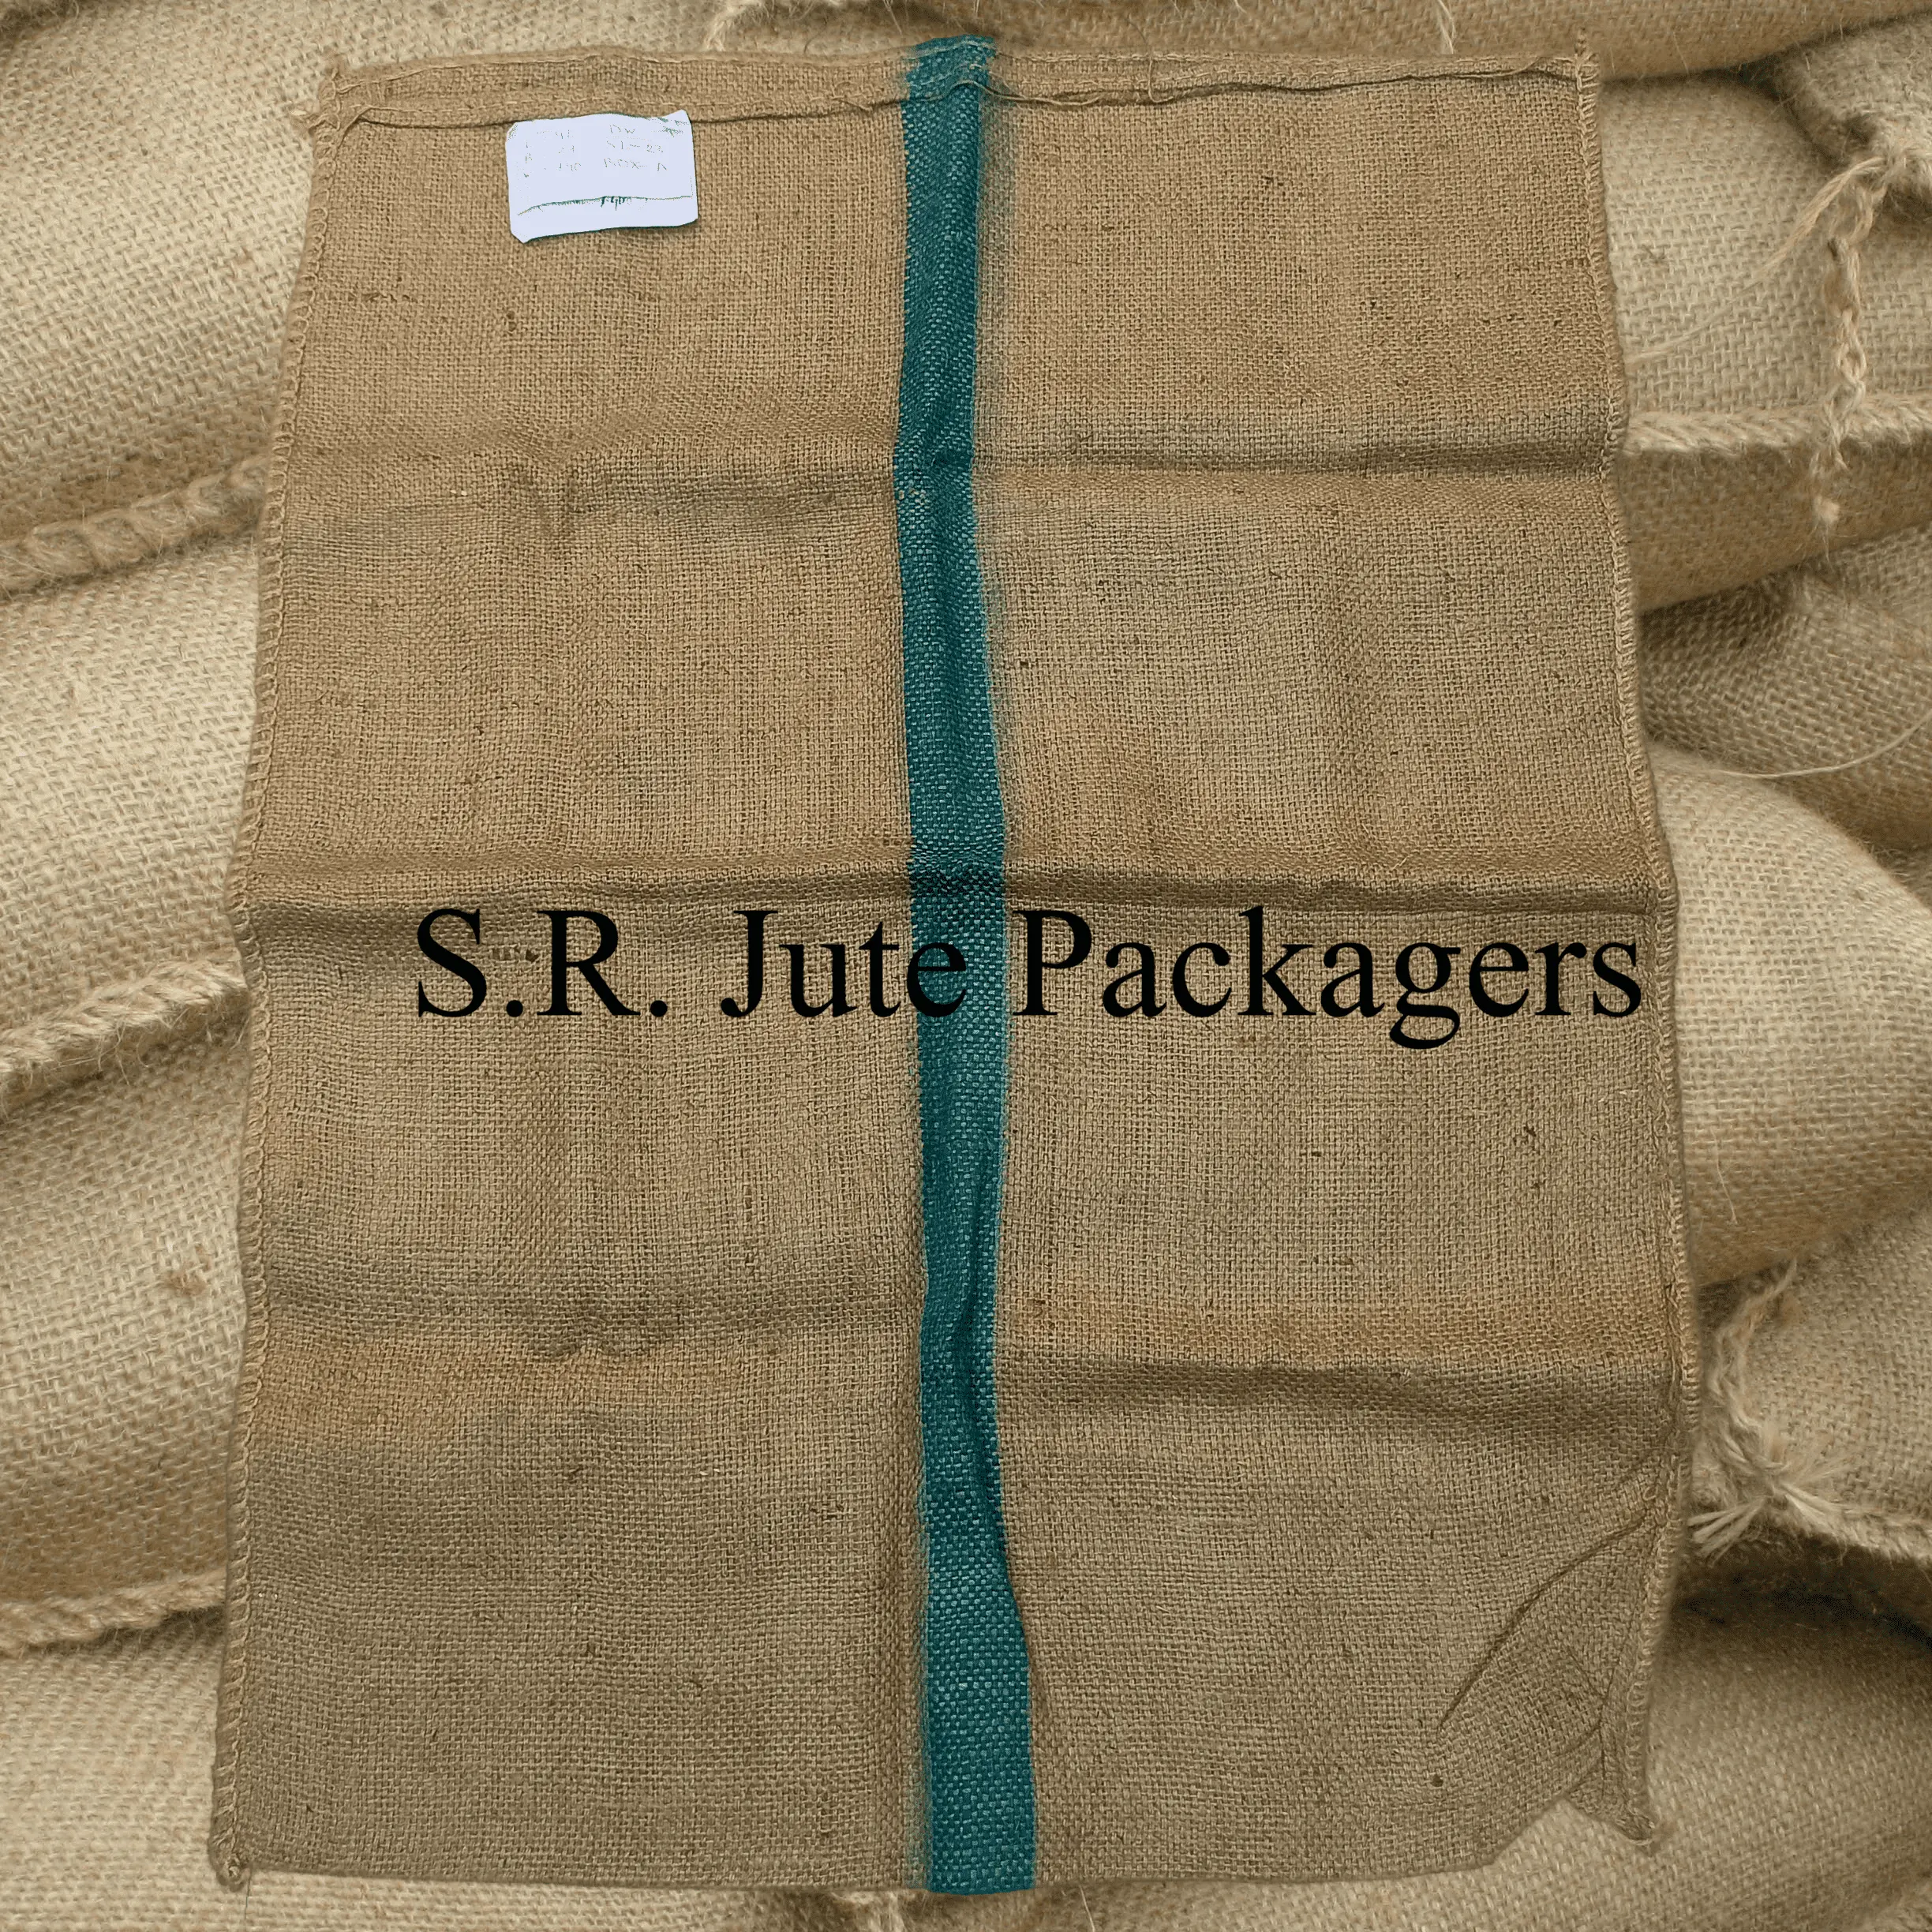 En İyi kalite toptan jüt topçu çanta için kullanılan kahve kakao tarım ambalaj doğrudan üretim fabrikası yeniden kullanılabilir